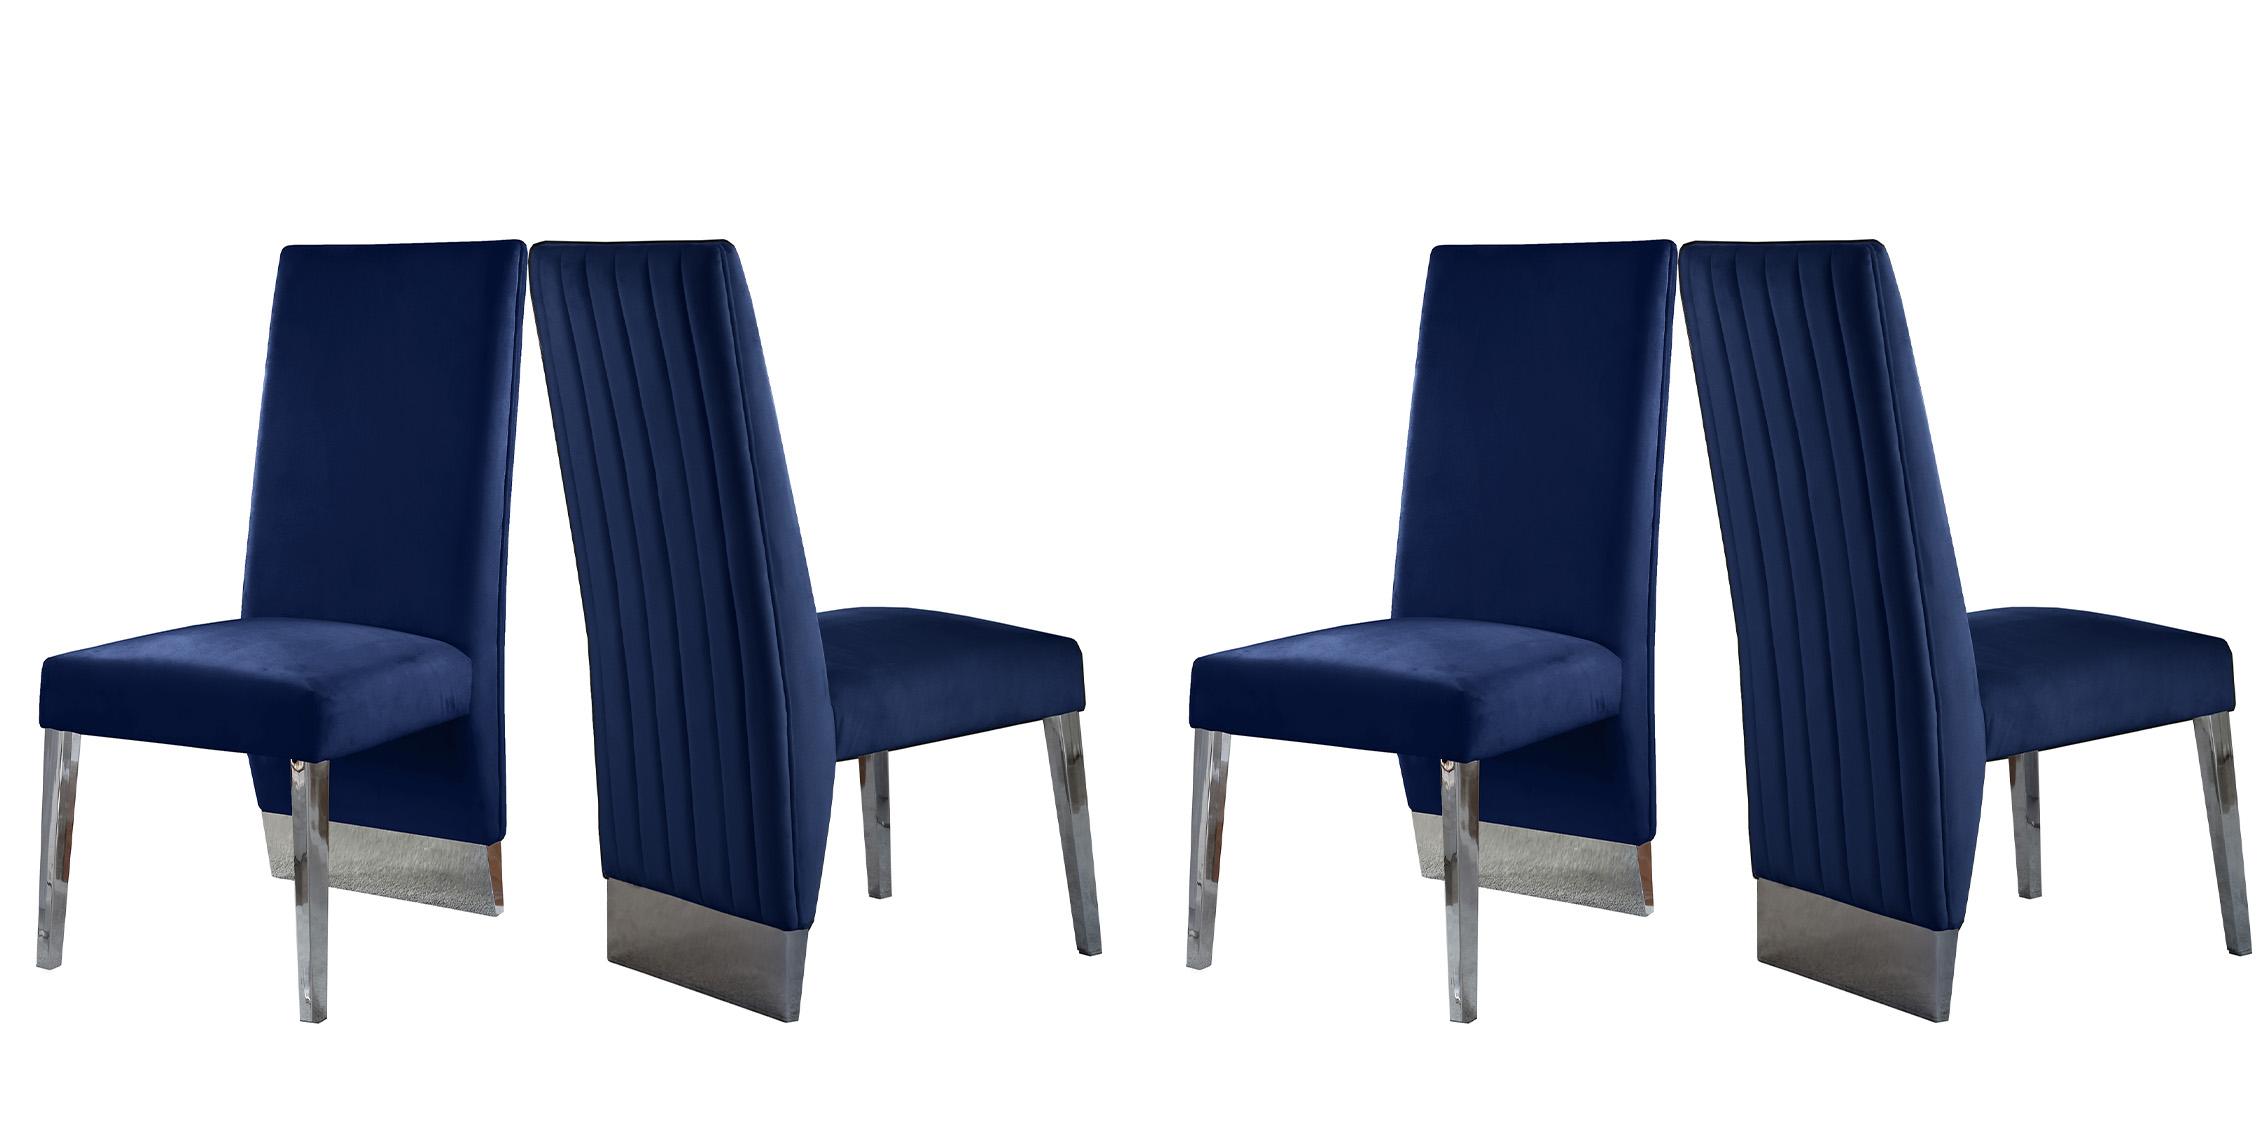 Contemporary, Modern Chair Set PORSHA 756Navy-C 756Navy-C-Set-4 in Chrome, Blue Velvet